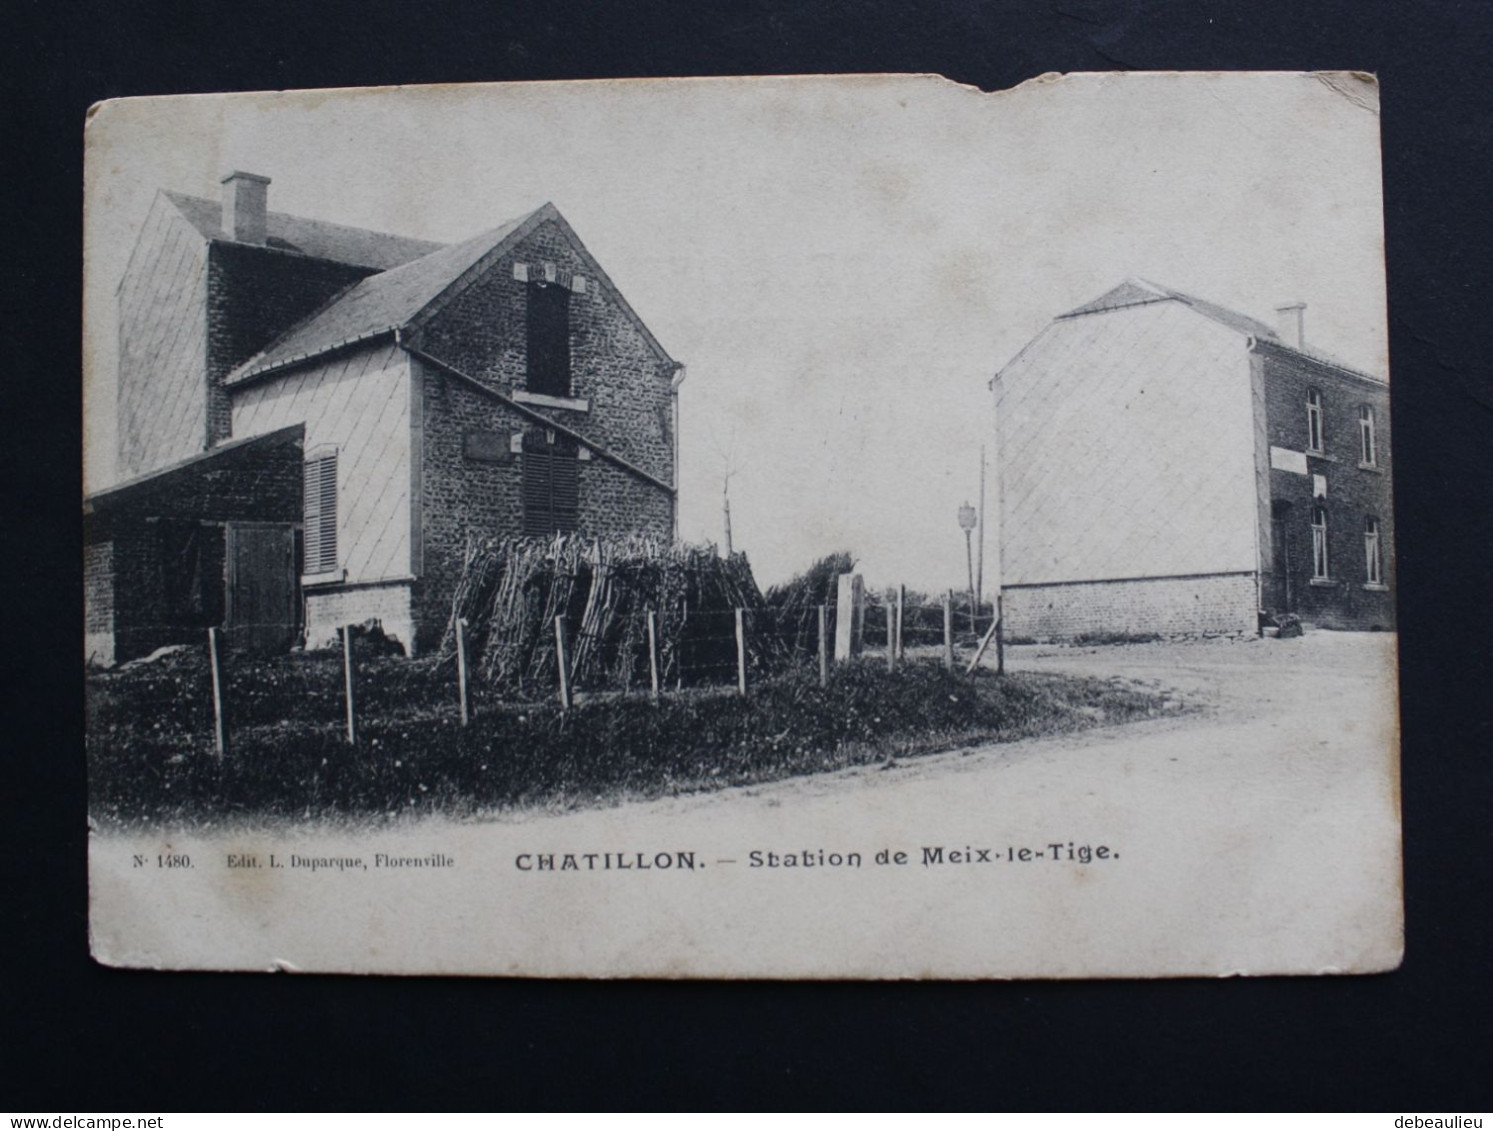 Chatillon - Station De Meix-le-Tige , Edit L. Duparque, Florenville - Saint-Leger